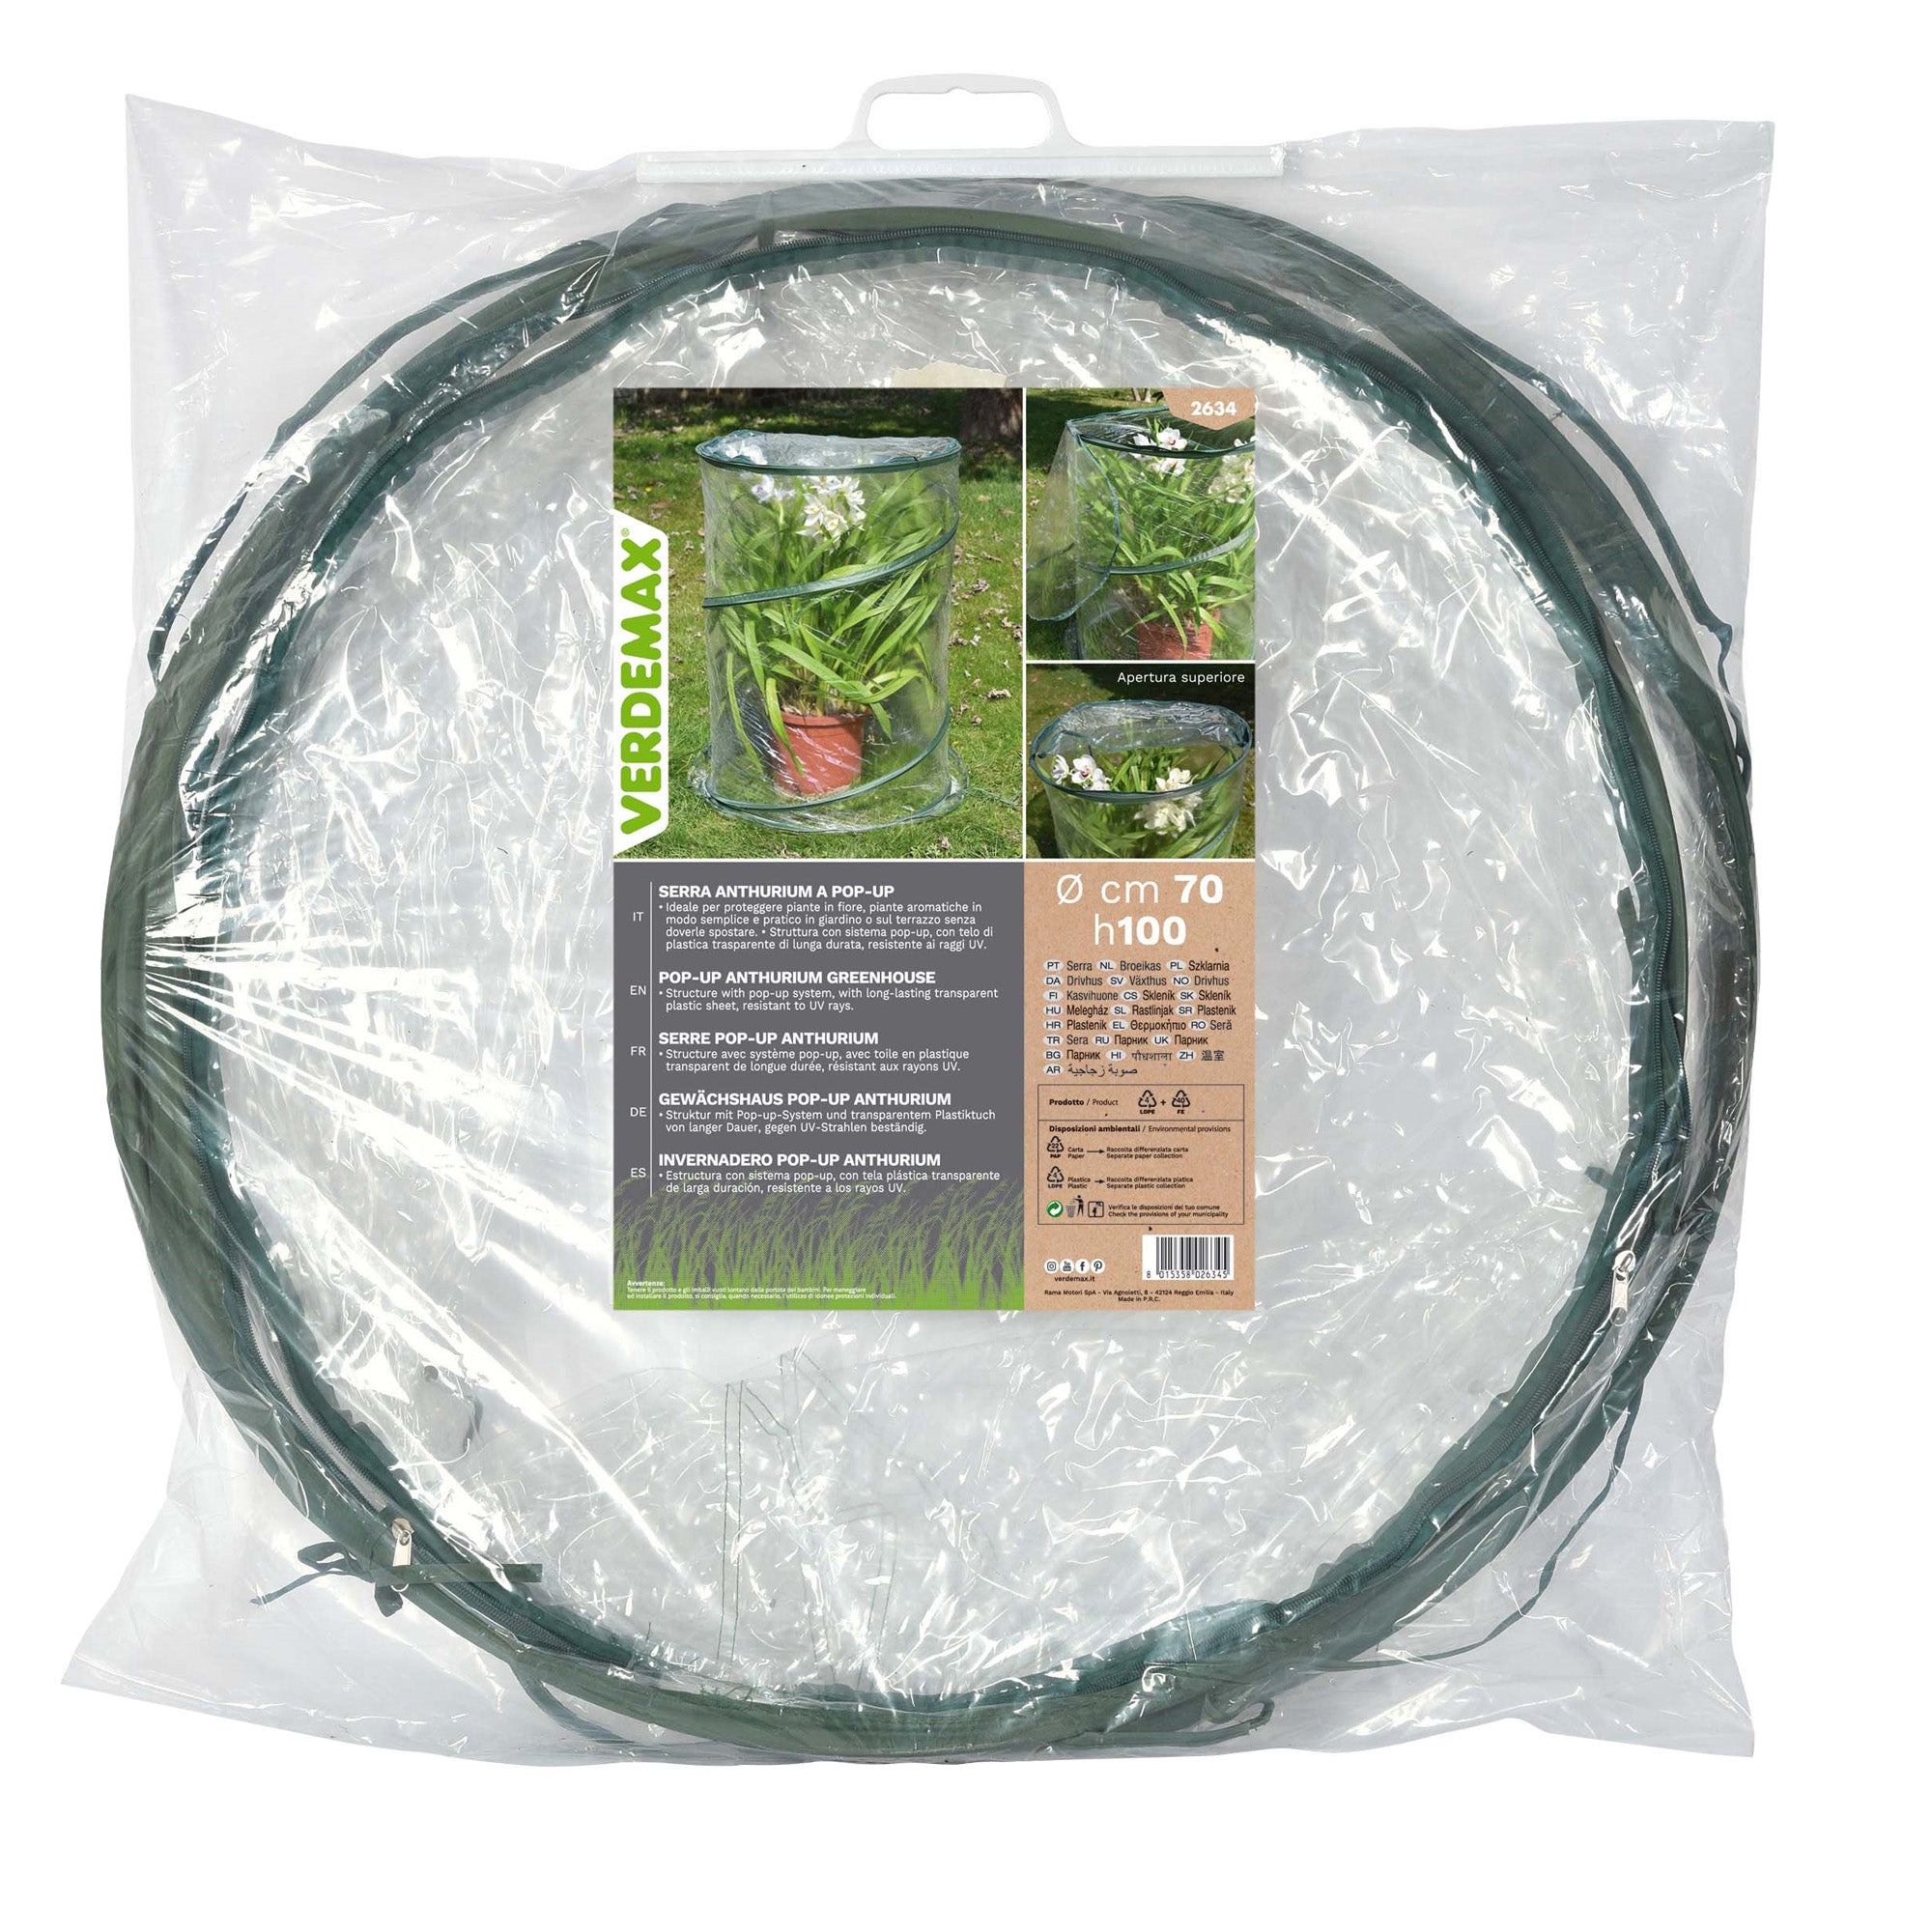 verdemax-serra-pop-up-anthurium-70x100cm-verde-trasparente